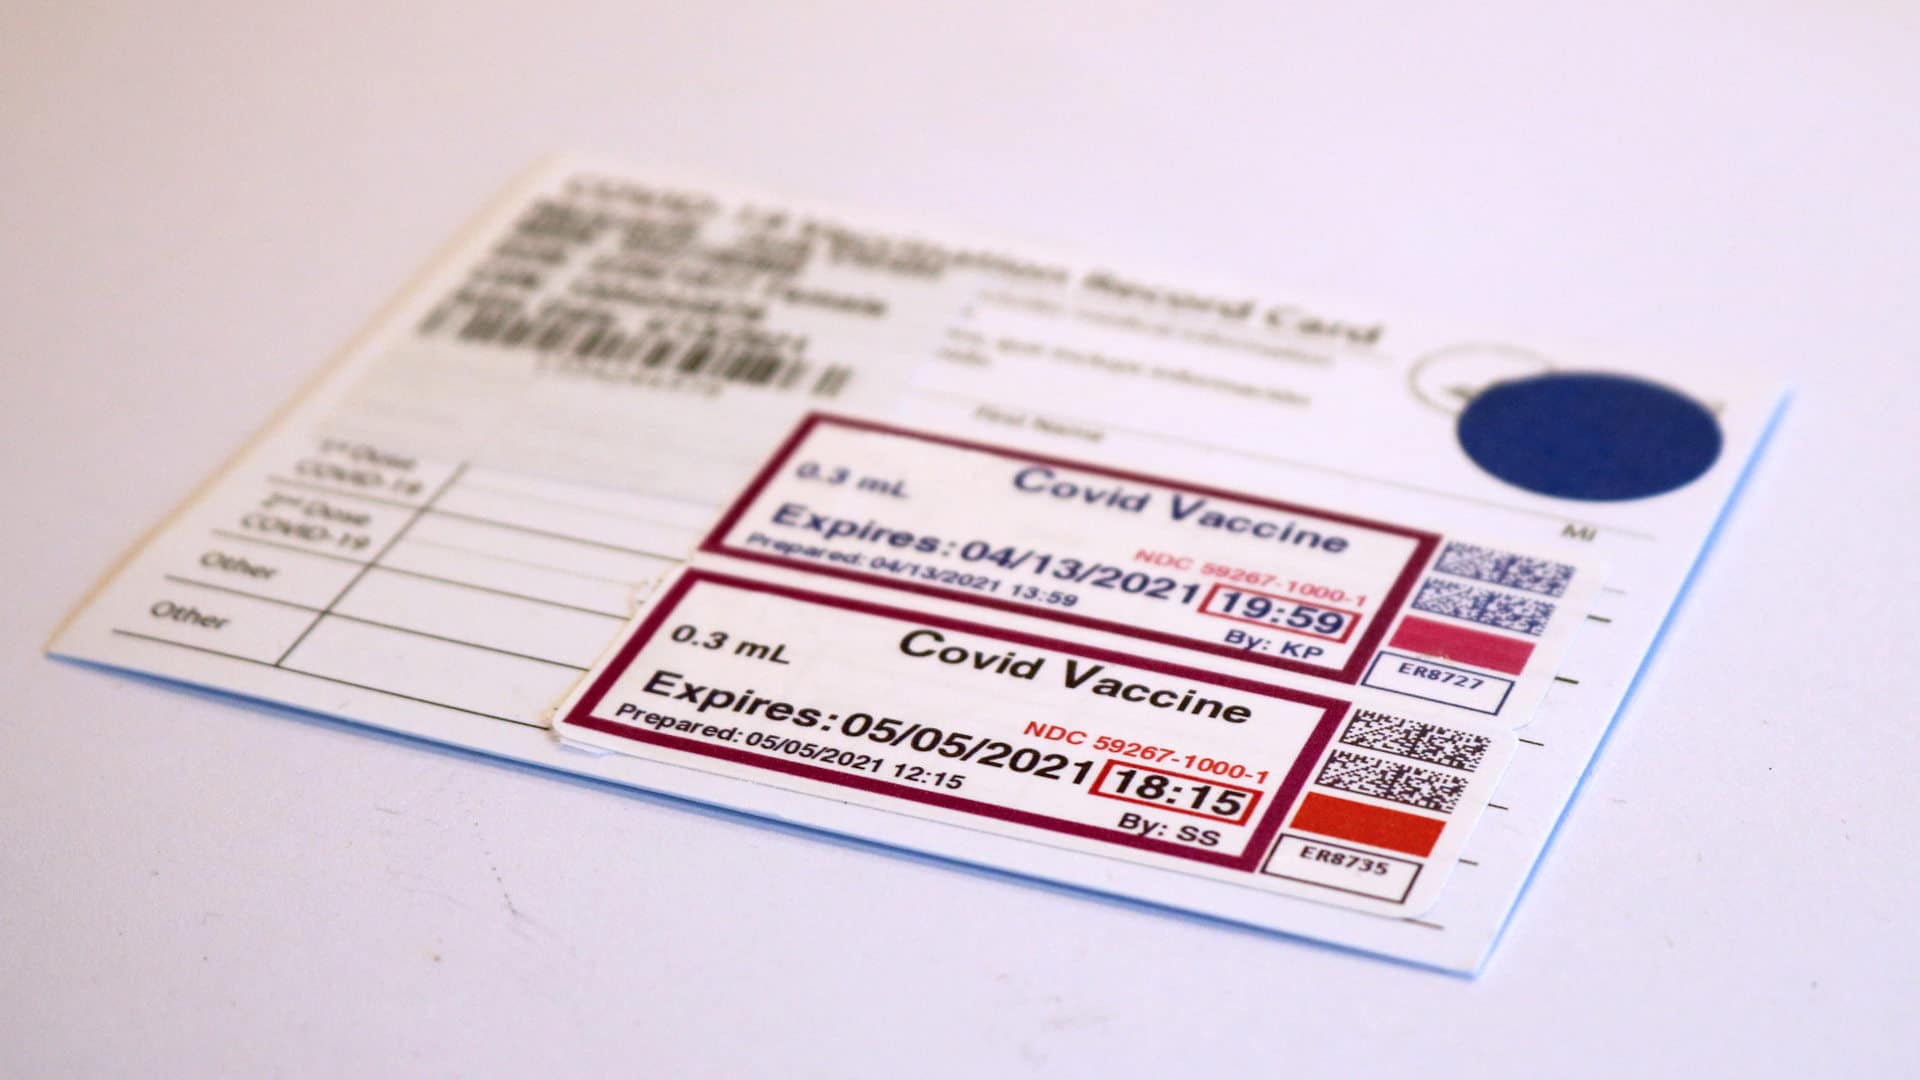 A Covid-19 vaccine record card.